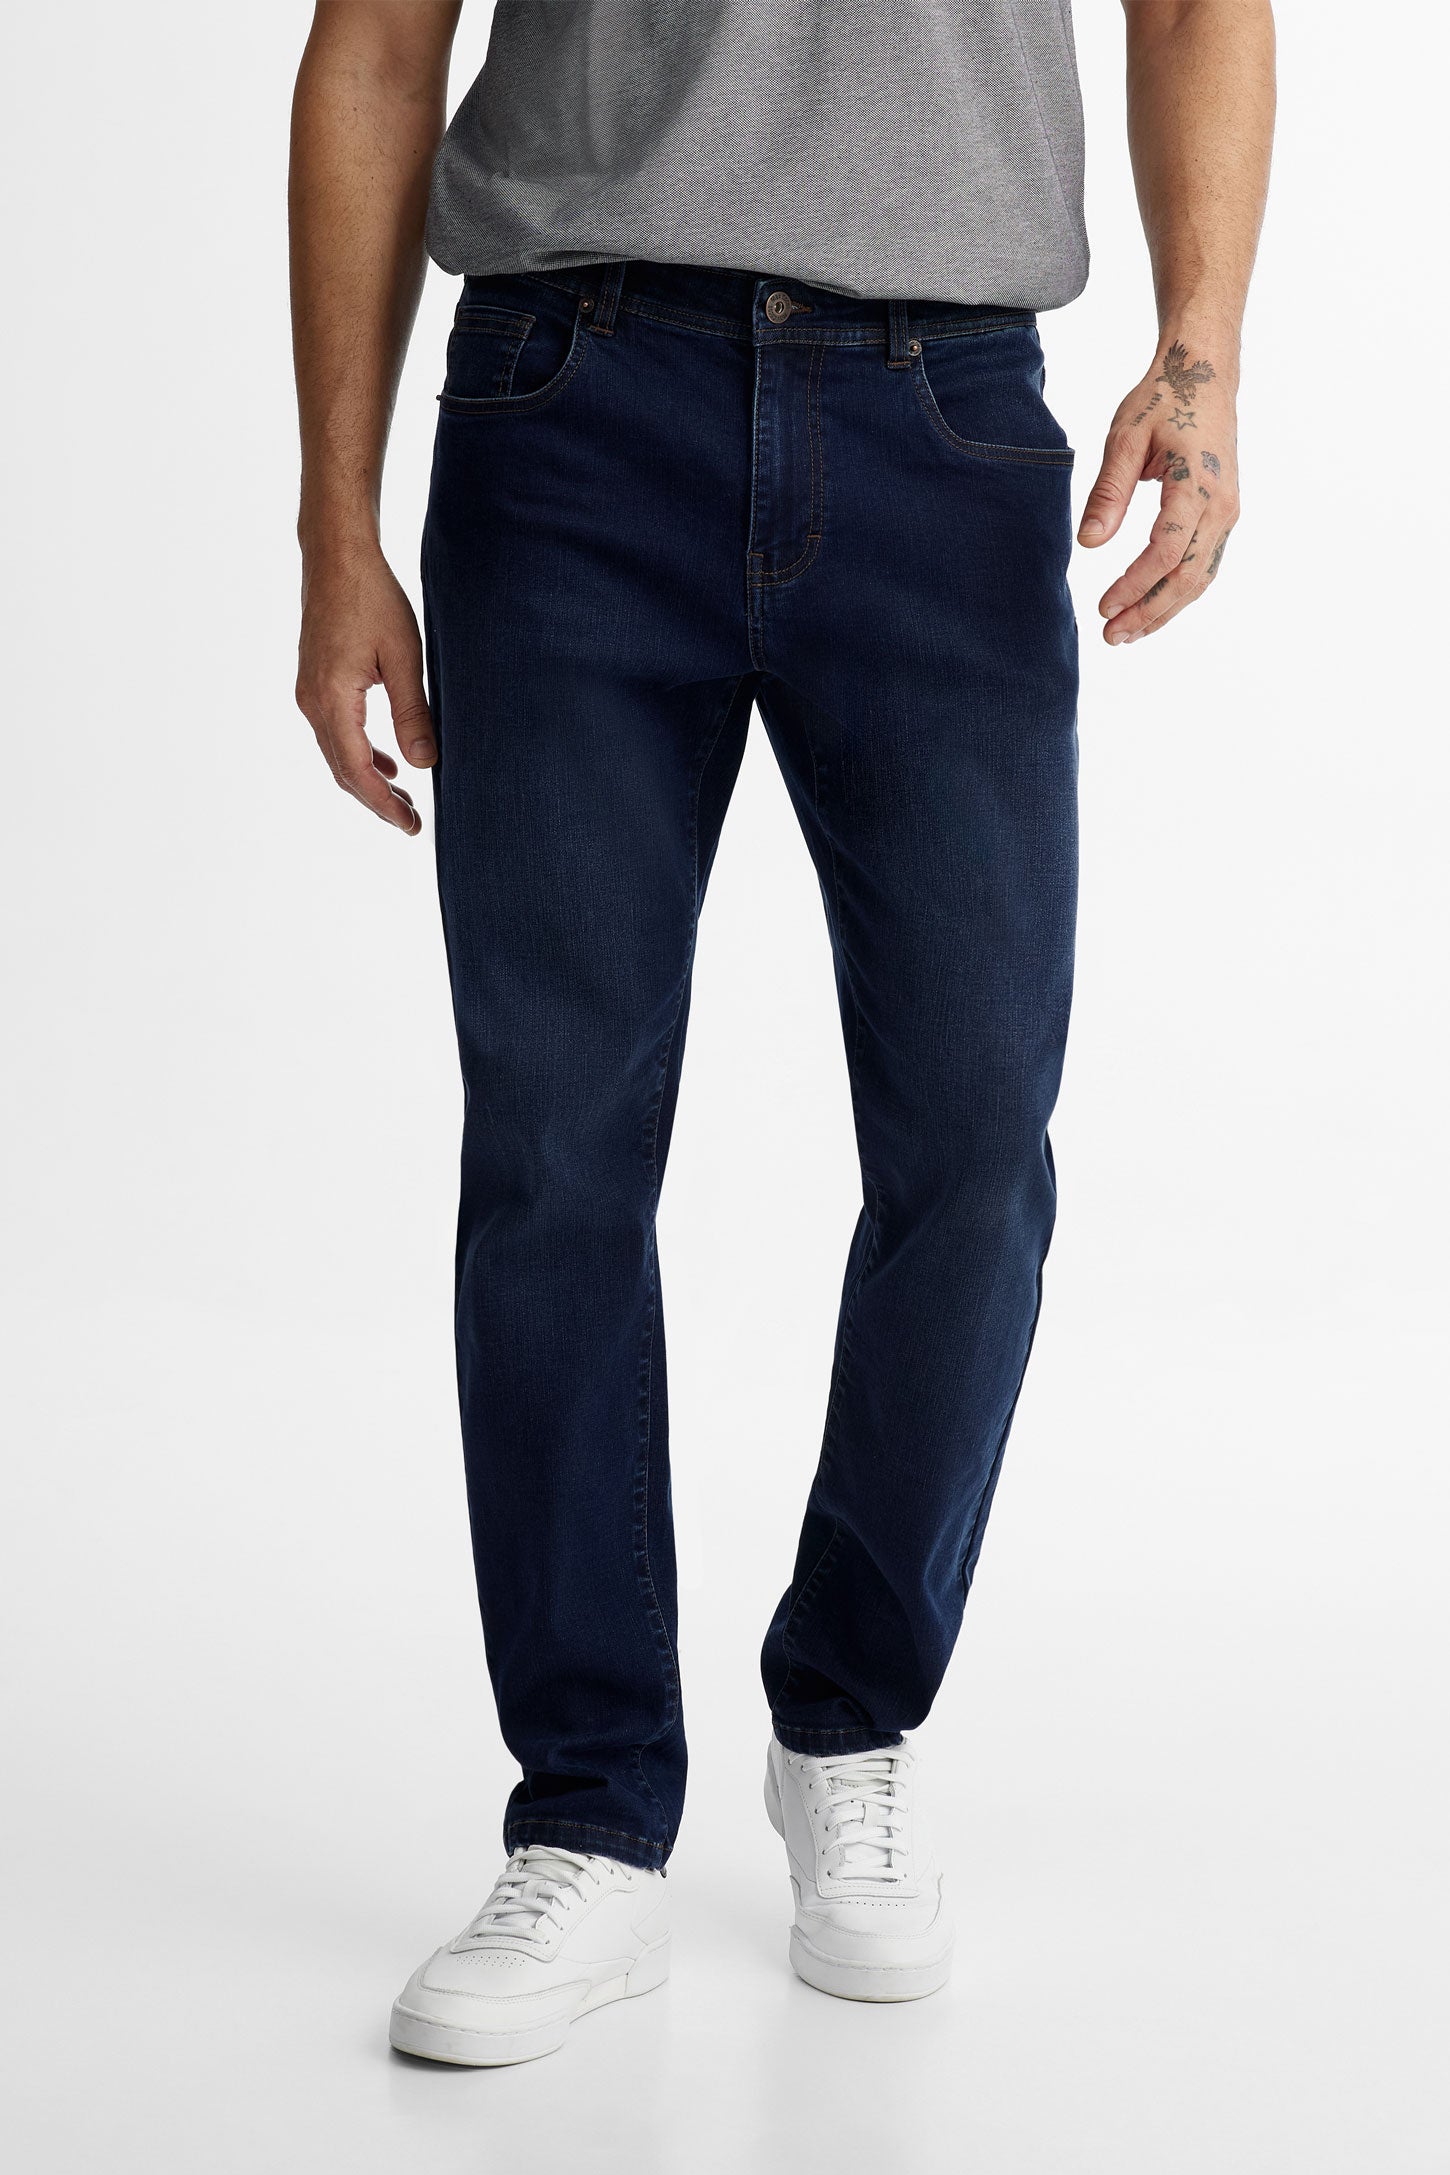 Jeans 5 poches jambe étroite en Lyocell - Homme && BLEU FONCE